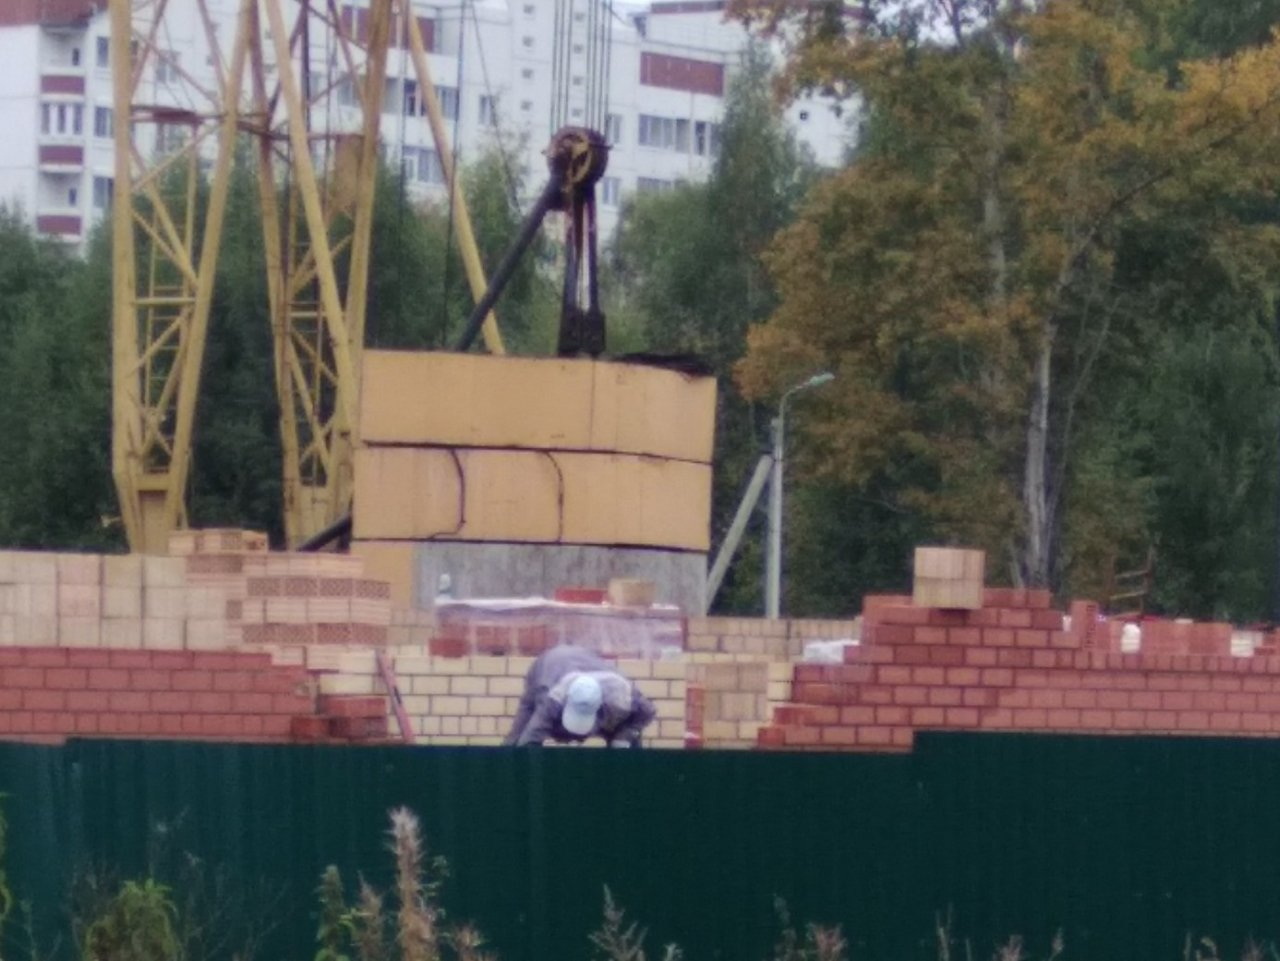 "Еле разбежаться успели": строительный кран сломался на глазах у ярославцев